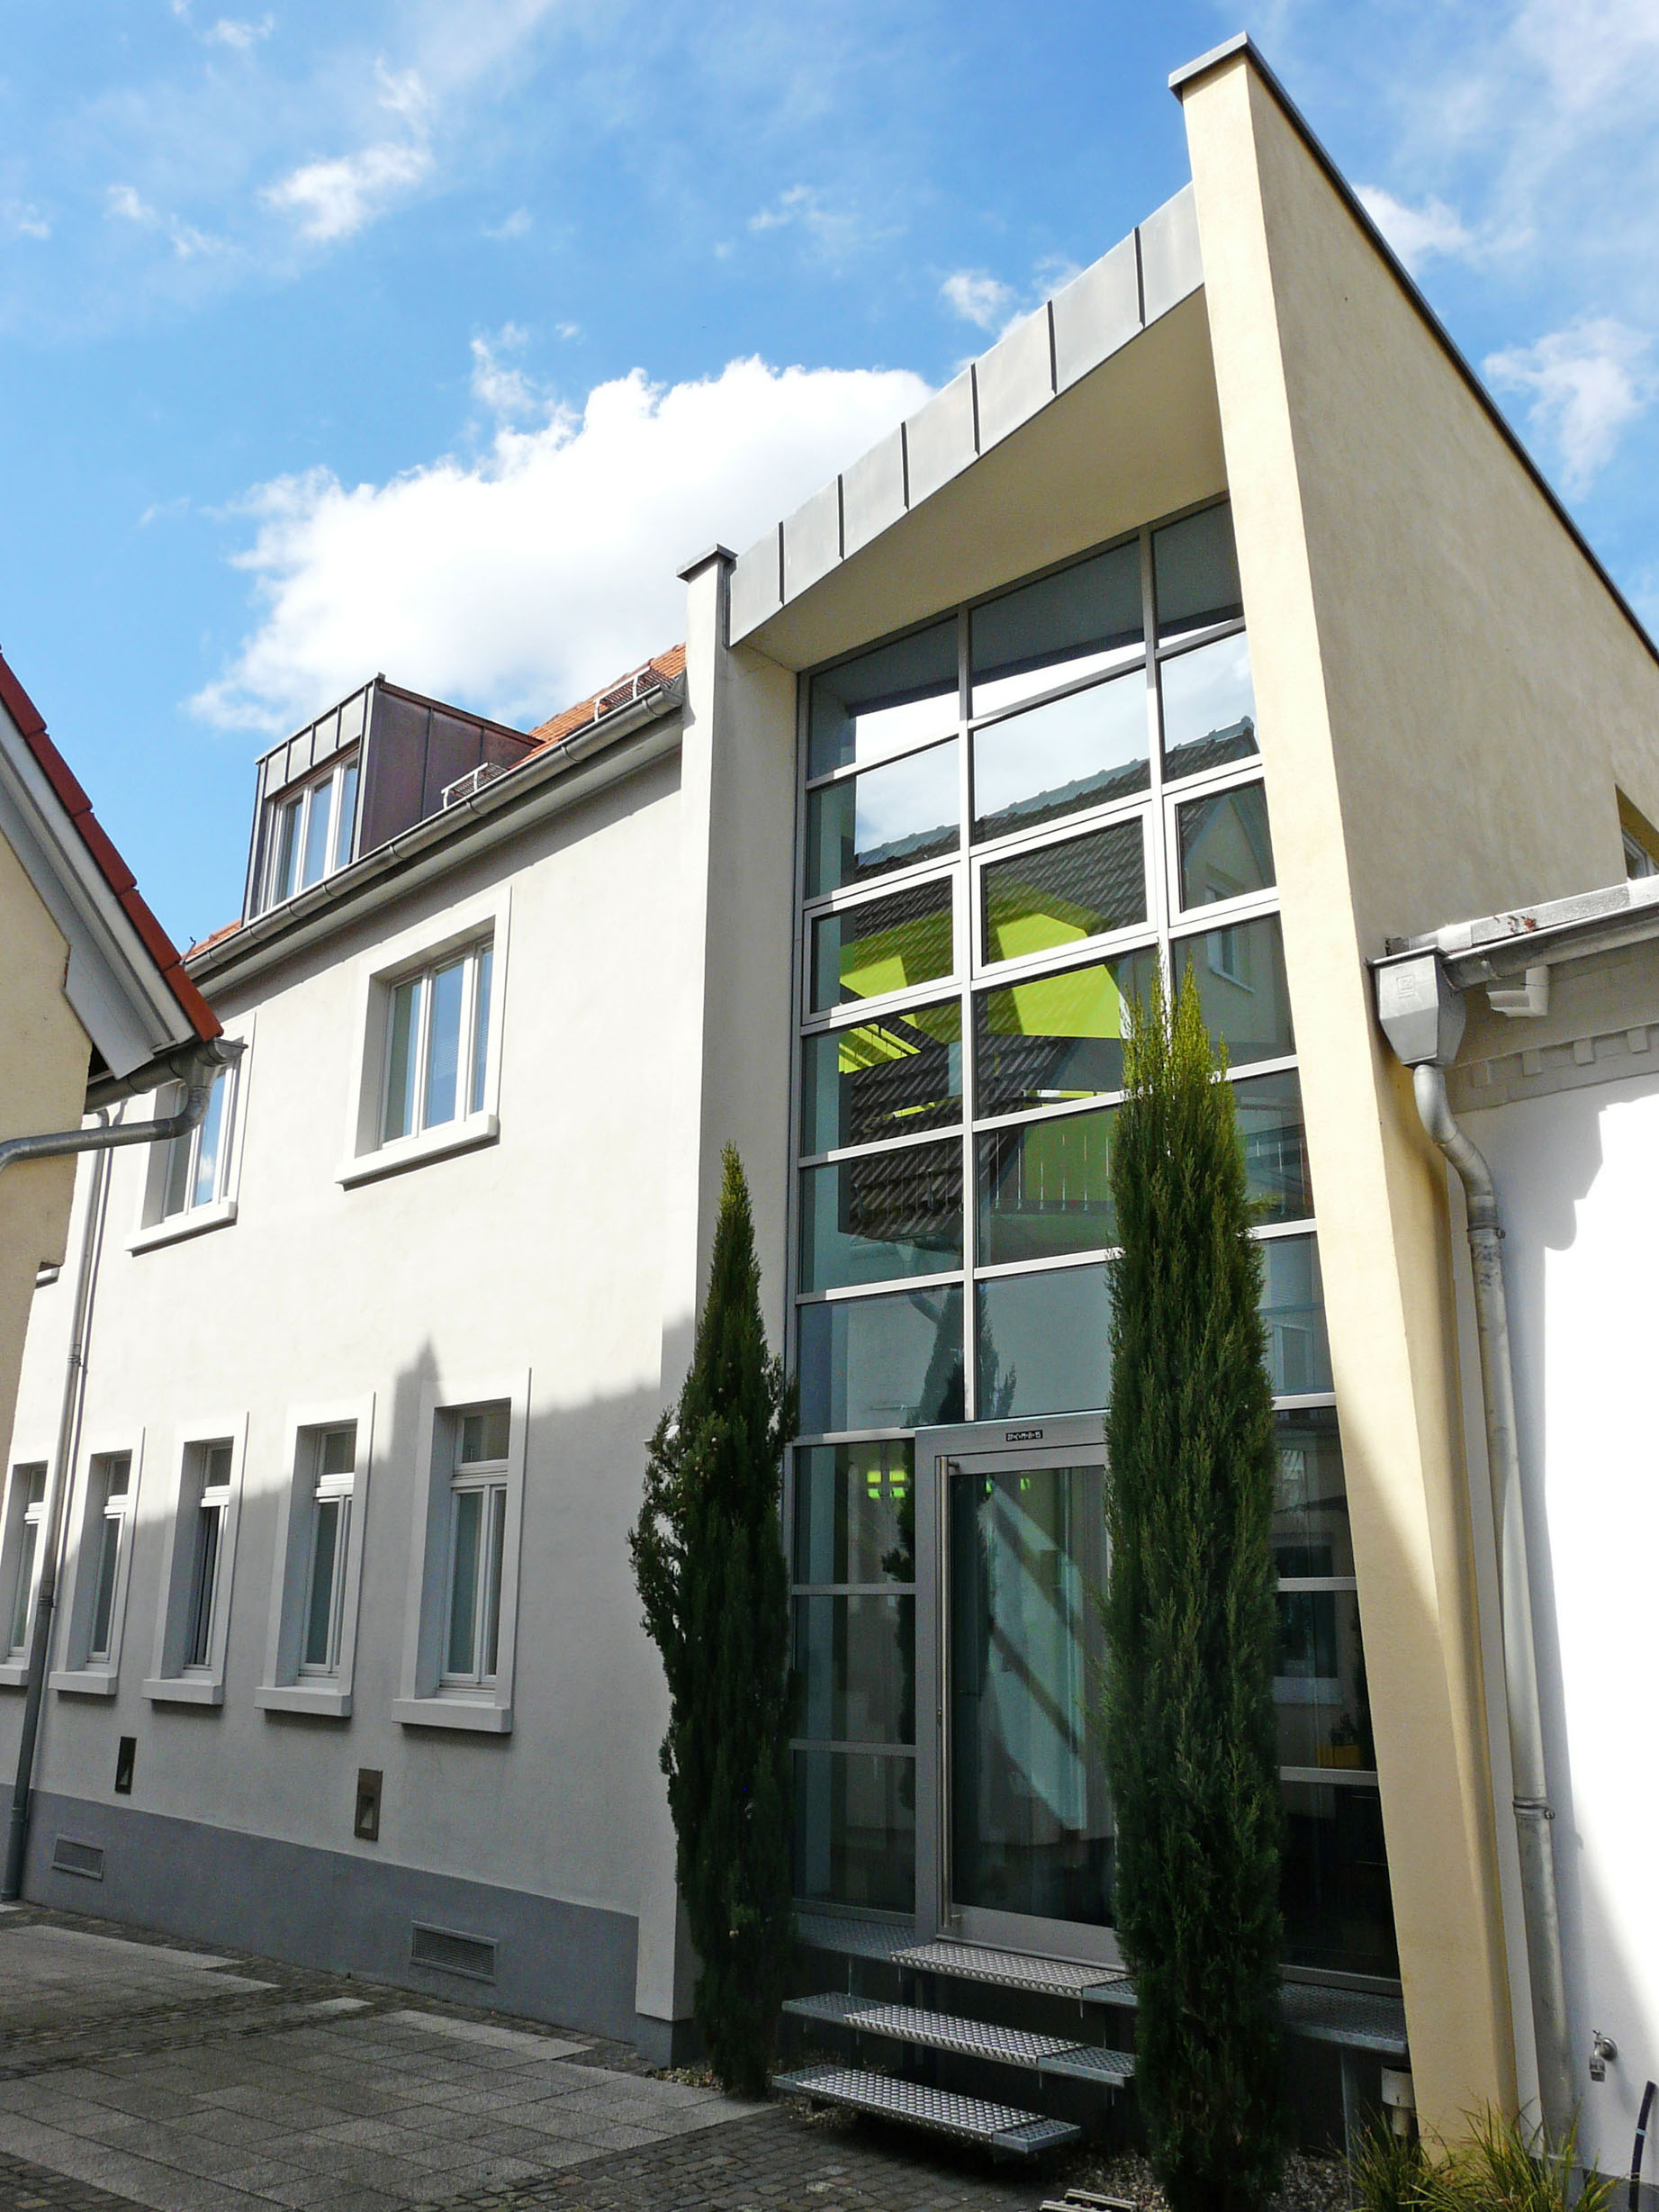 Bürogebäude der Träger Architekten GmbH